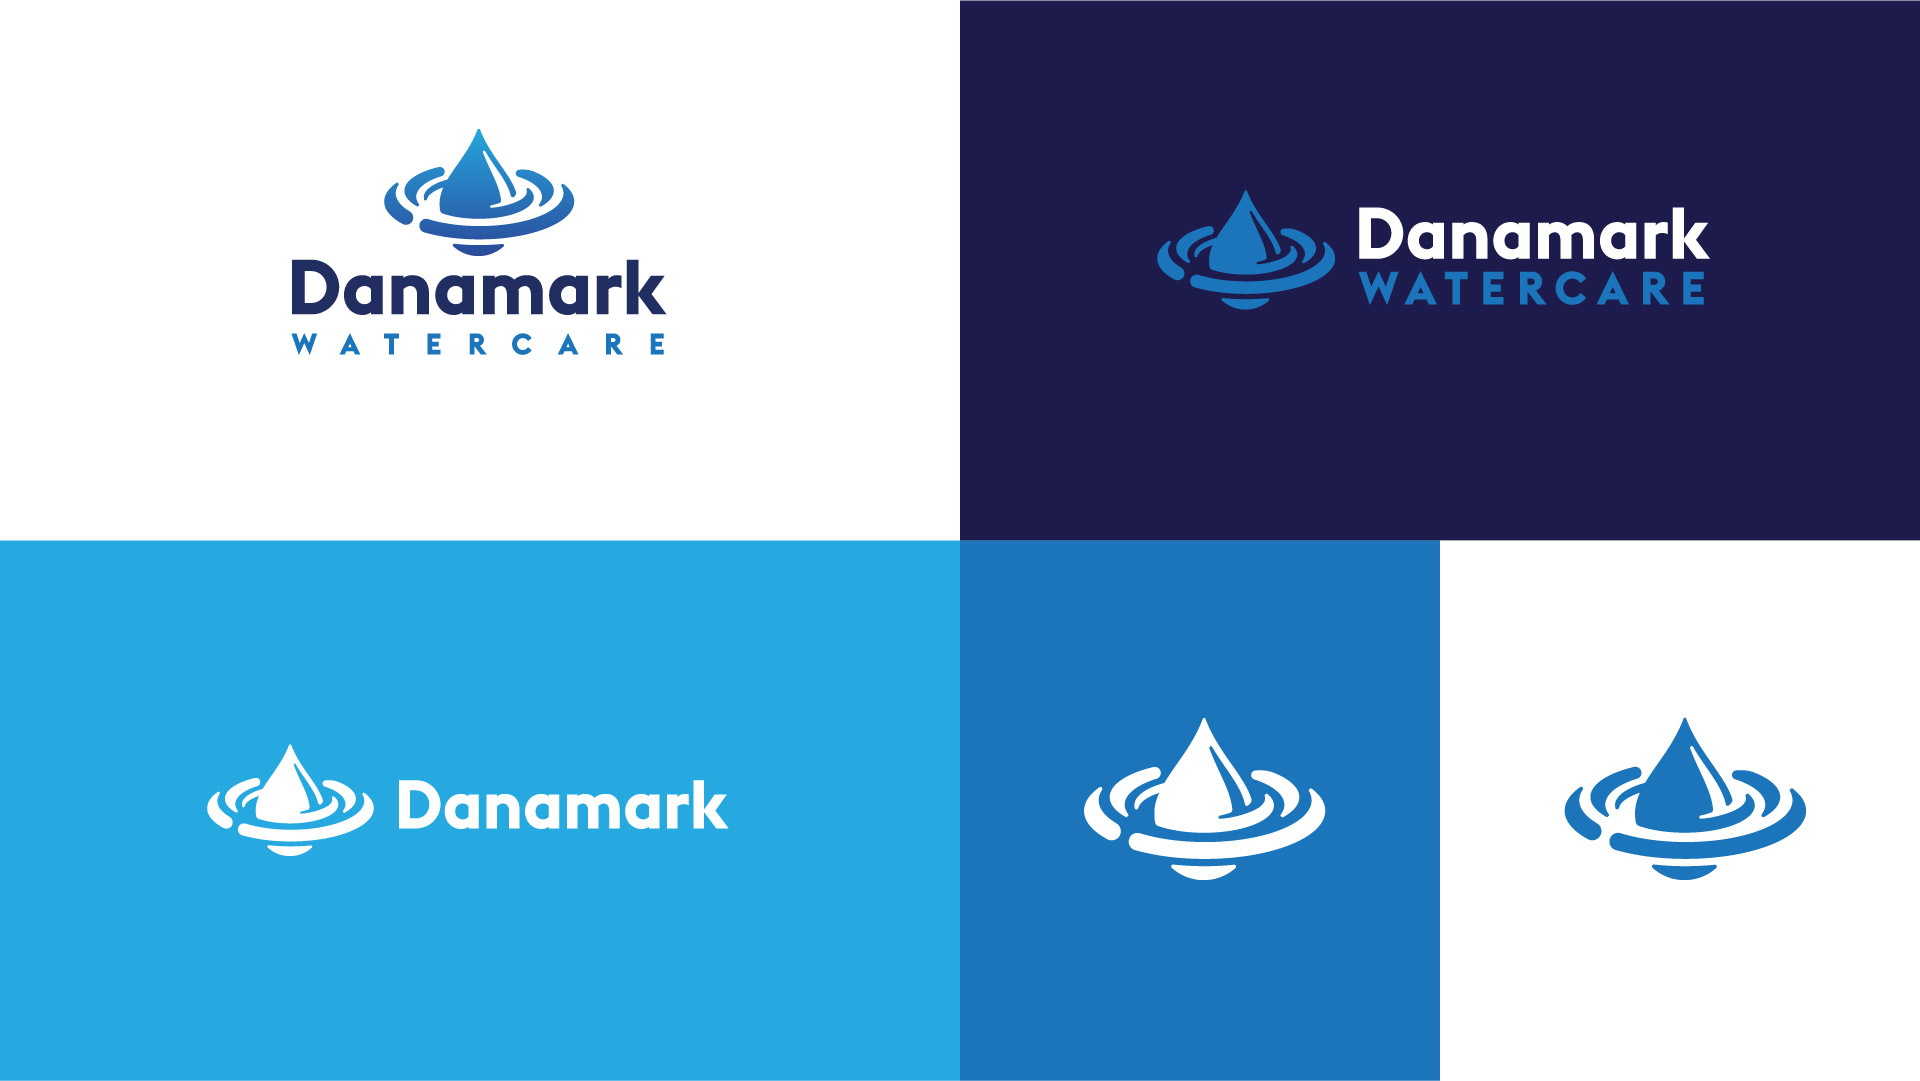 danamark watercare logo variations